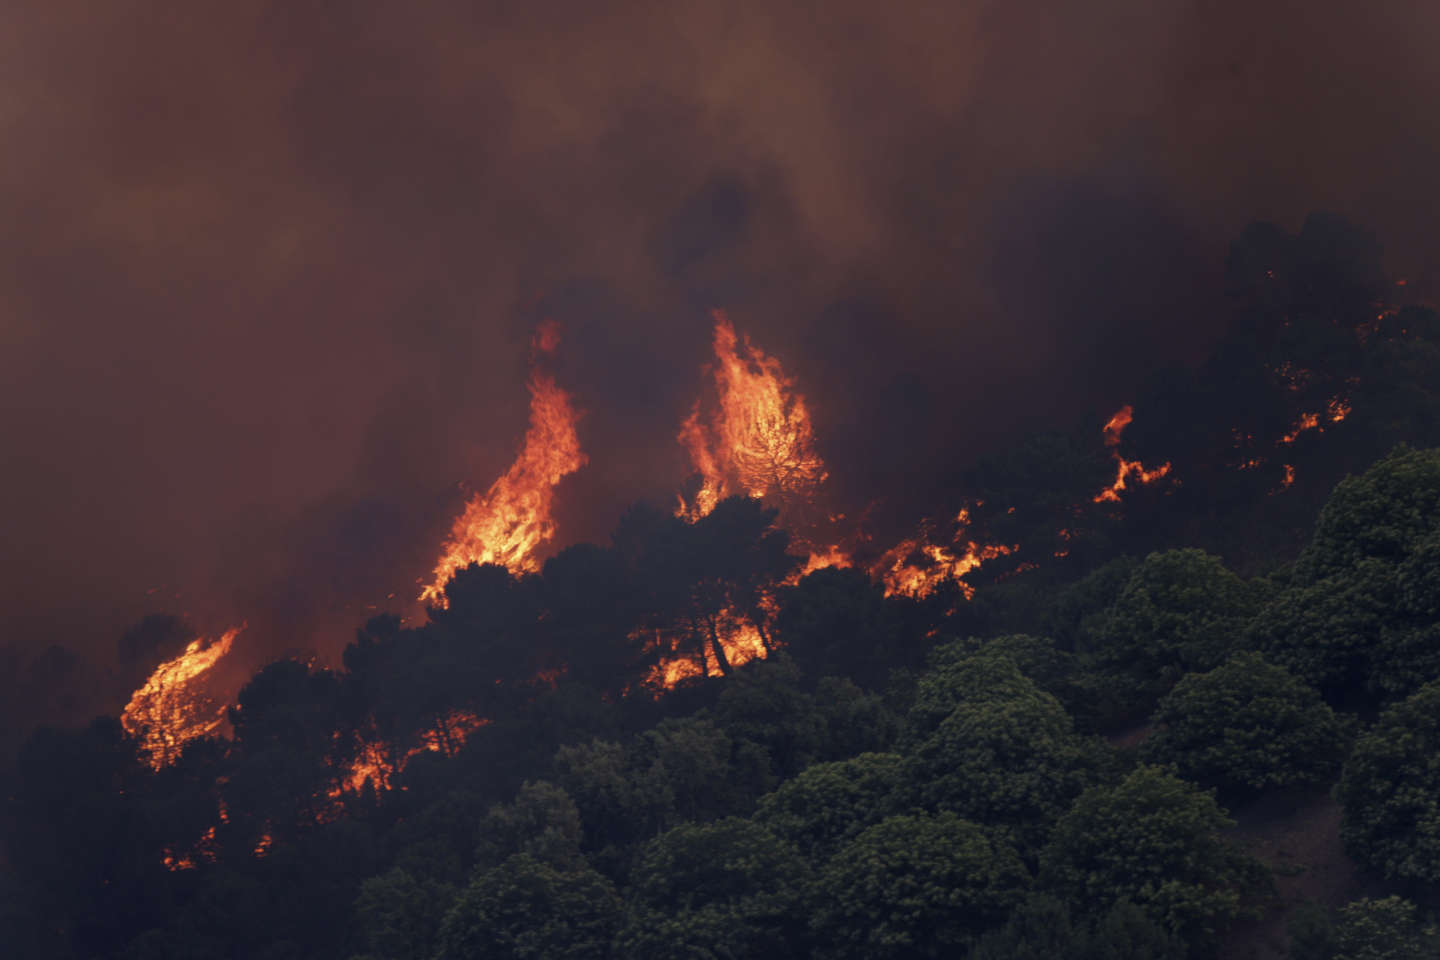 Les incendies gagnent du terrain en Espagne, frappée par une vague de chaleur extrême